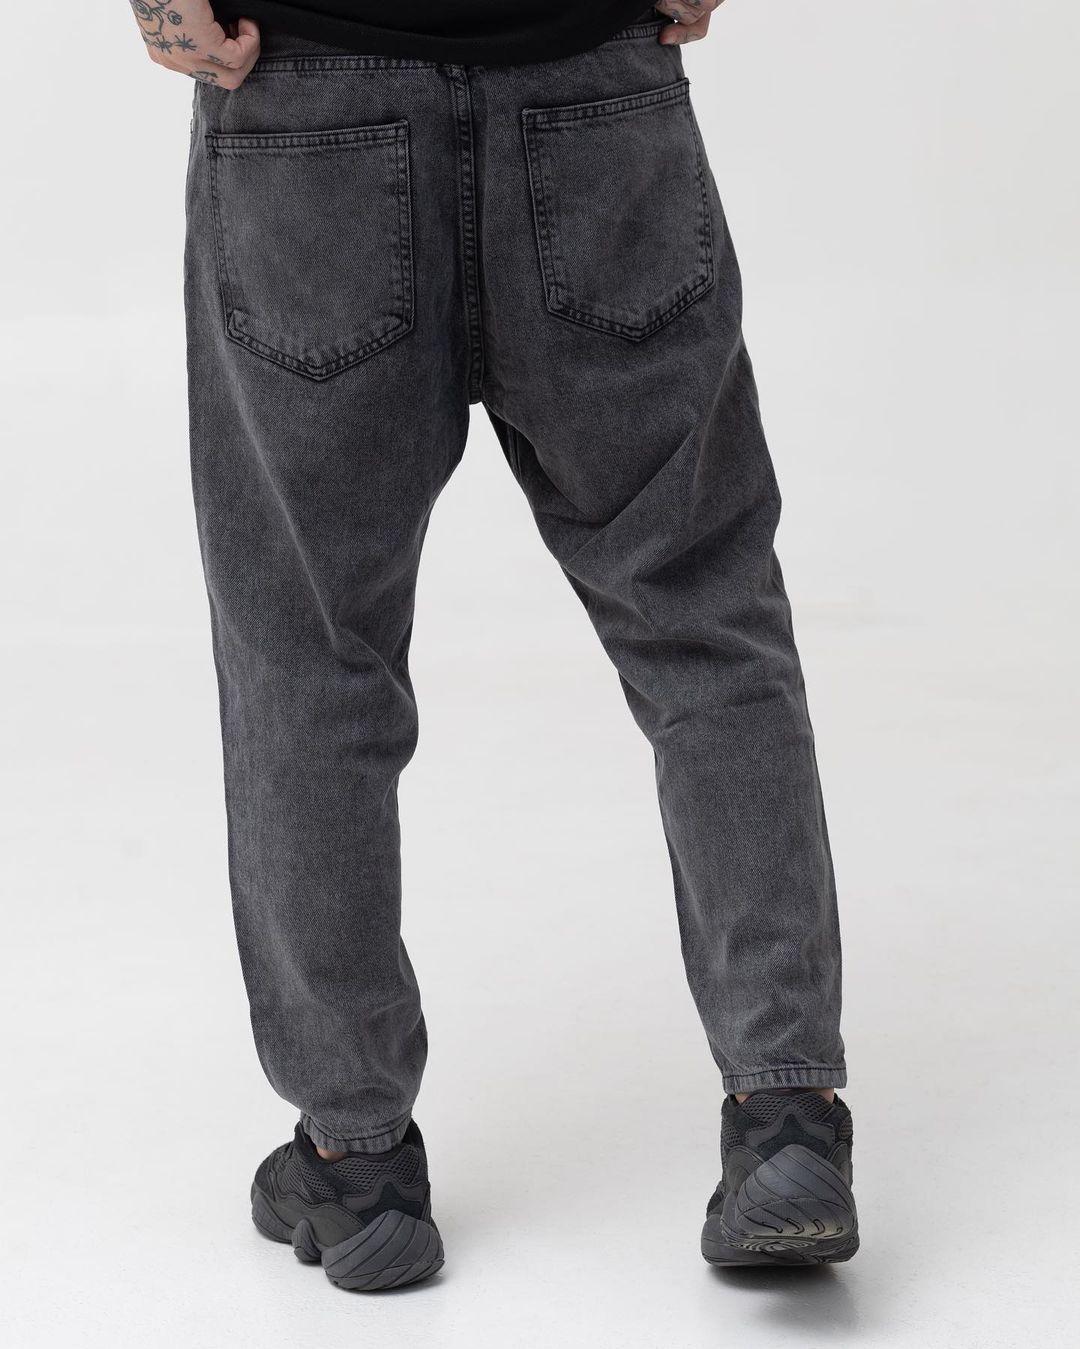 Чоловічі темно-сірі джинси BEZET базові бойфренди - Фото 3